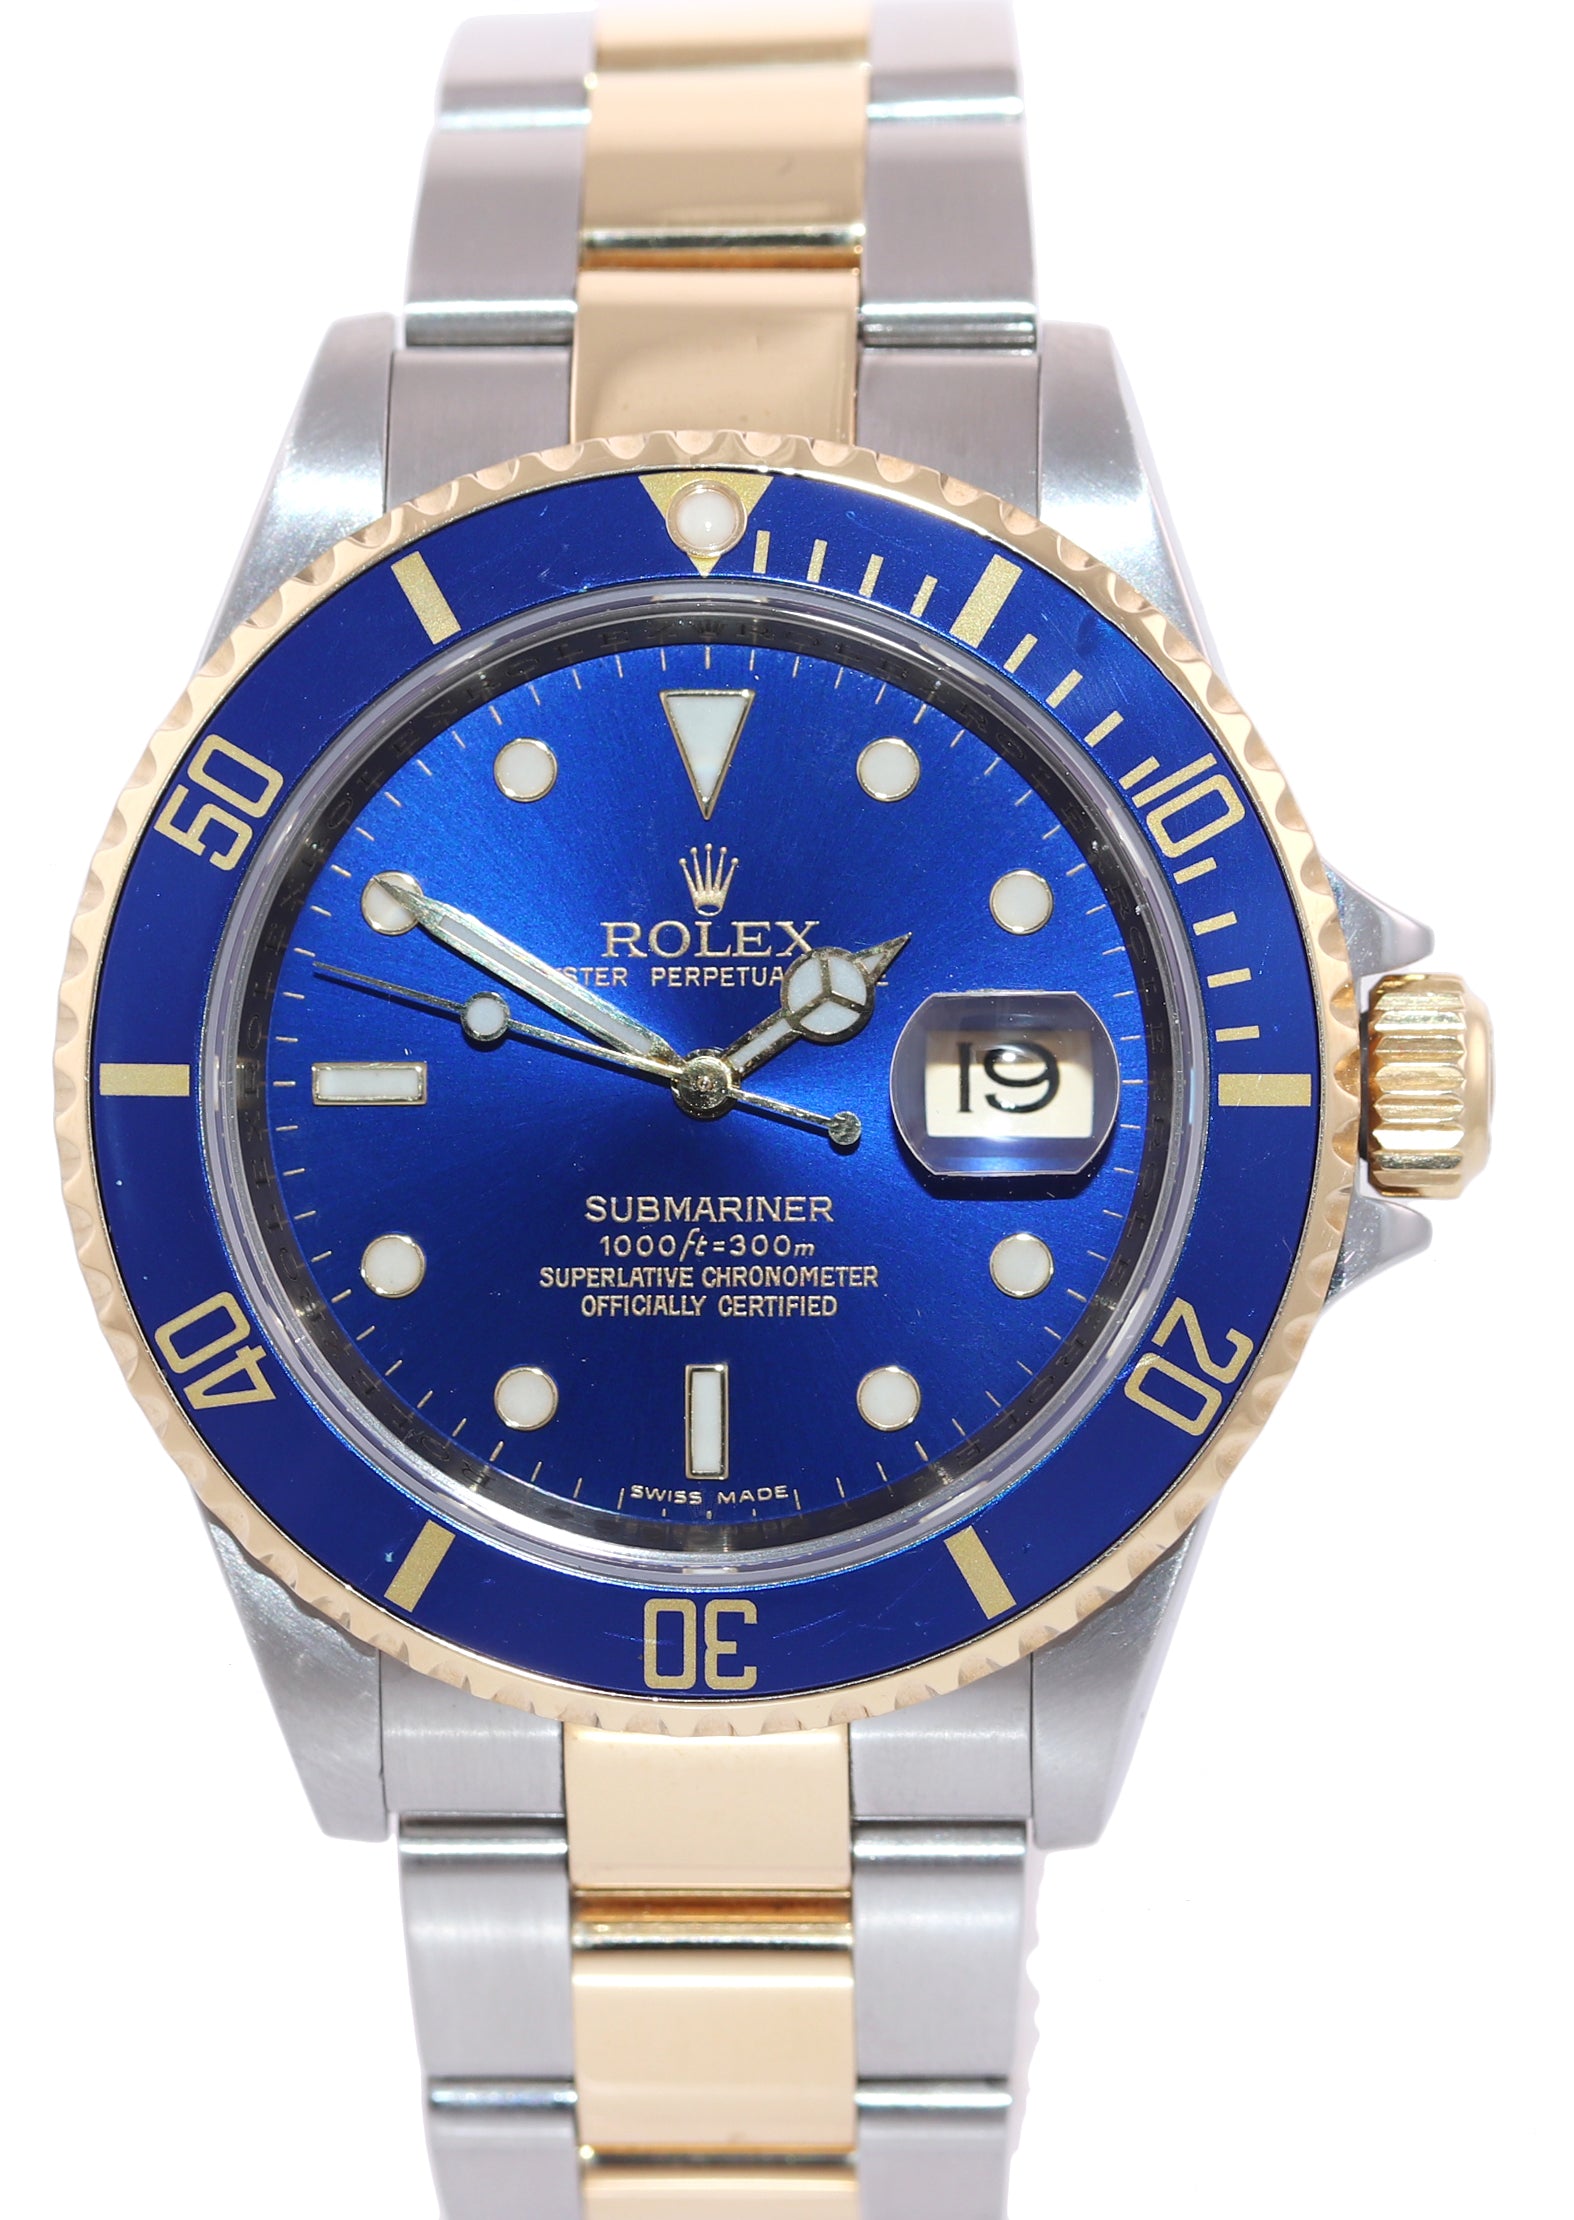 2008 GOLD BUCKLE Rolex Submariner 16613 Gold Steel Blue Watch Box Rehaut